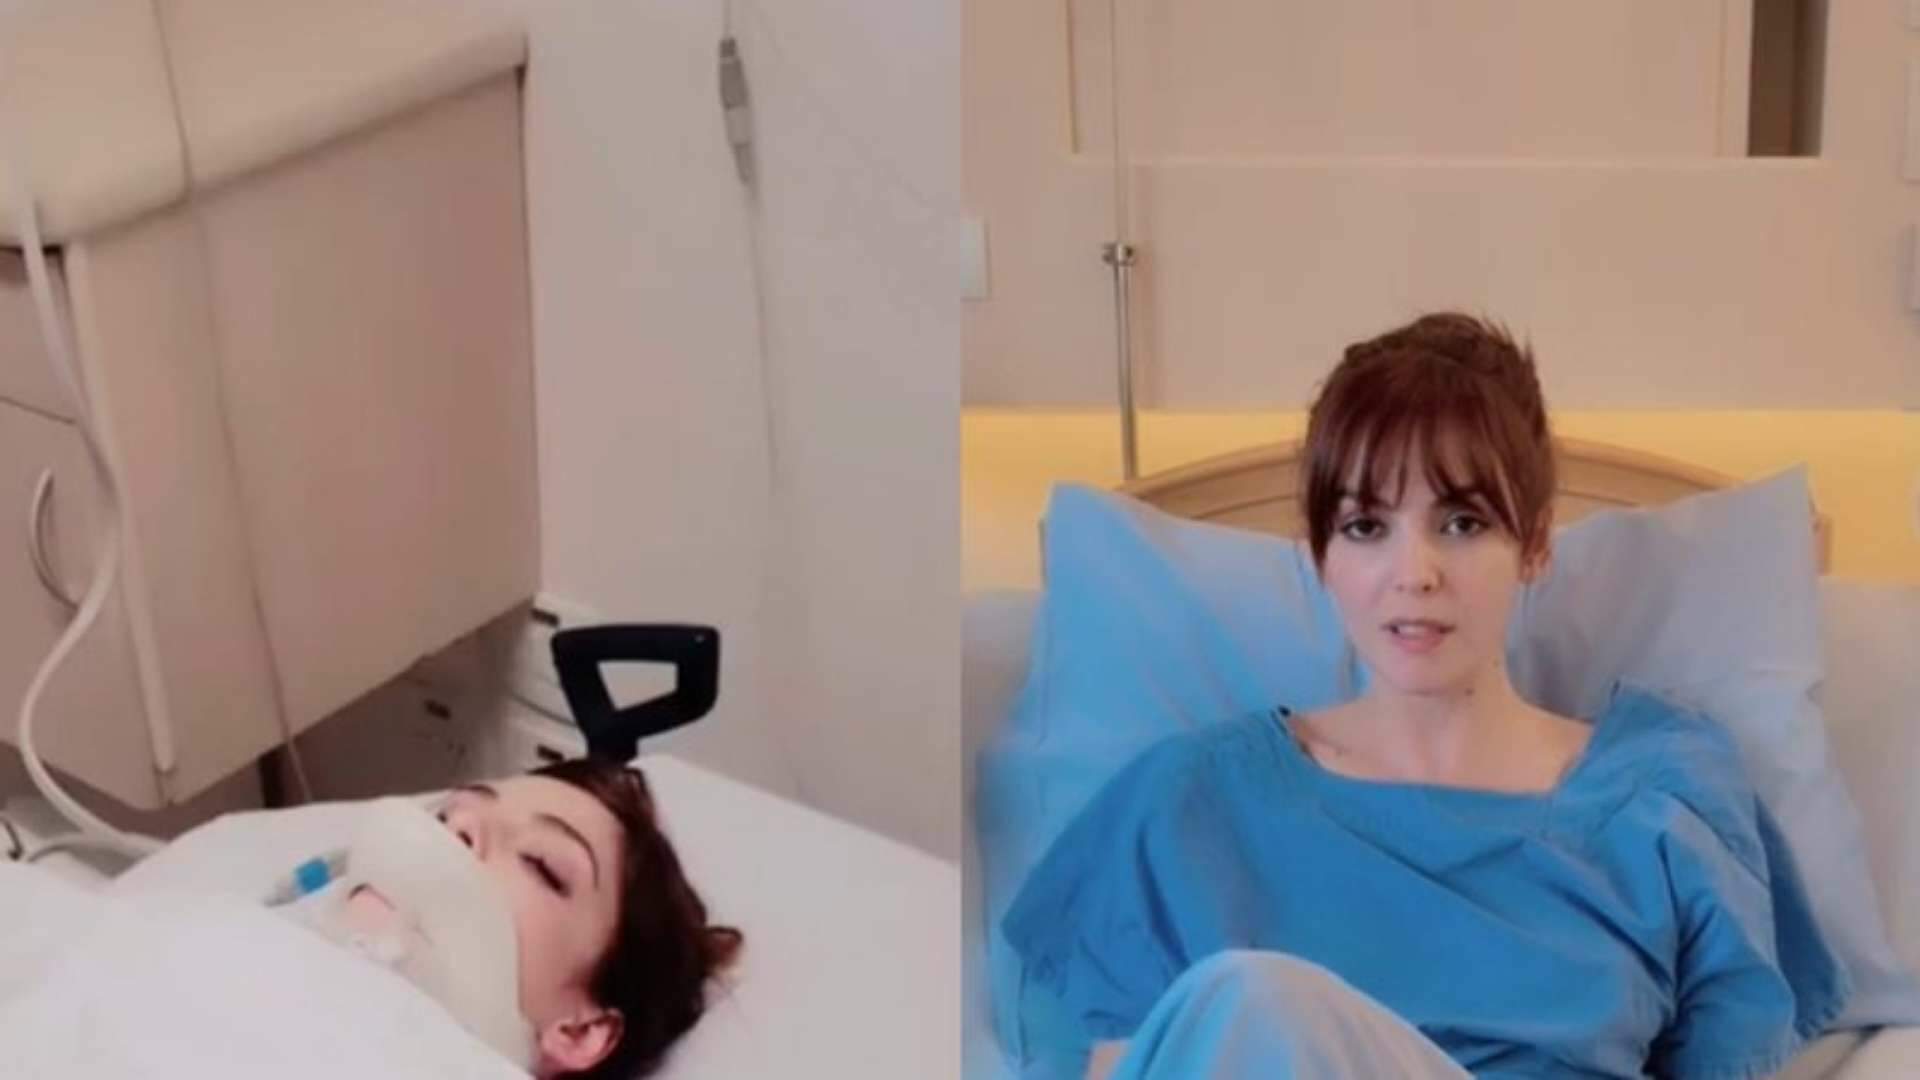 Titi Müller passa por procedimento cirúrgico após fratura: “Fui atropelada” - Metropolitana FM